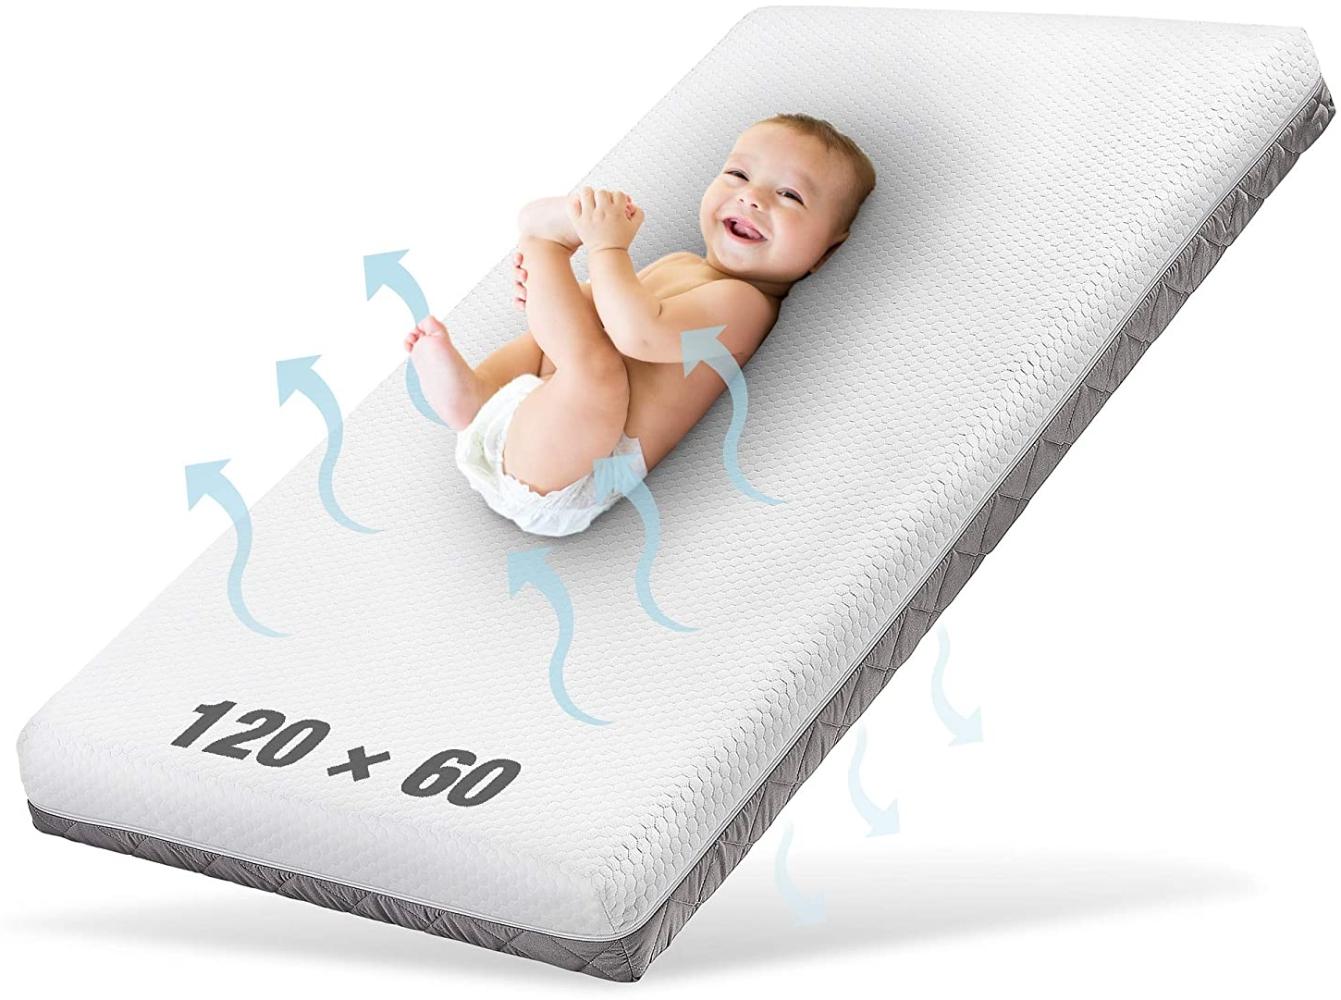 Ehrenkind® Babymatratze Royal | Babymatratze 60x120cm | Matratze 120x60 mit innovativem 3D Mesh und Hygiene Tencel Bezug wasserdicht + luftdurchlässig Bild 1